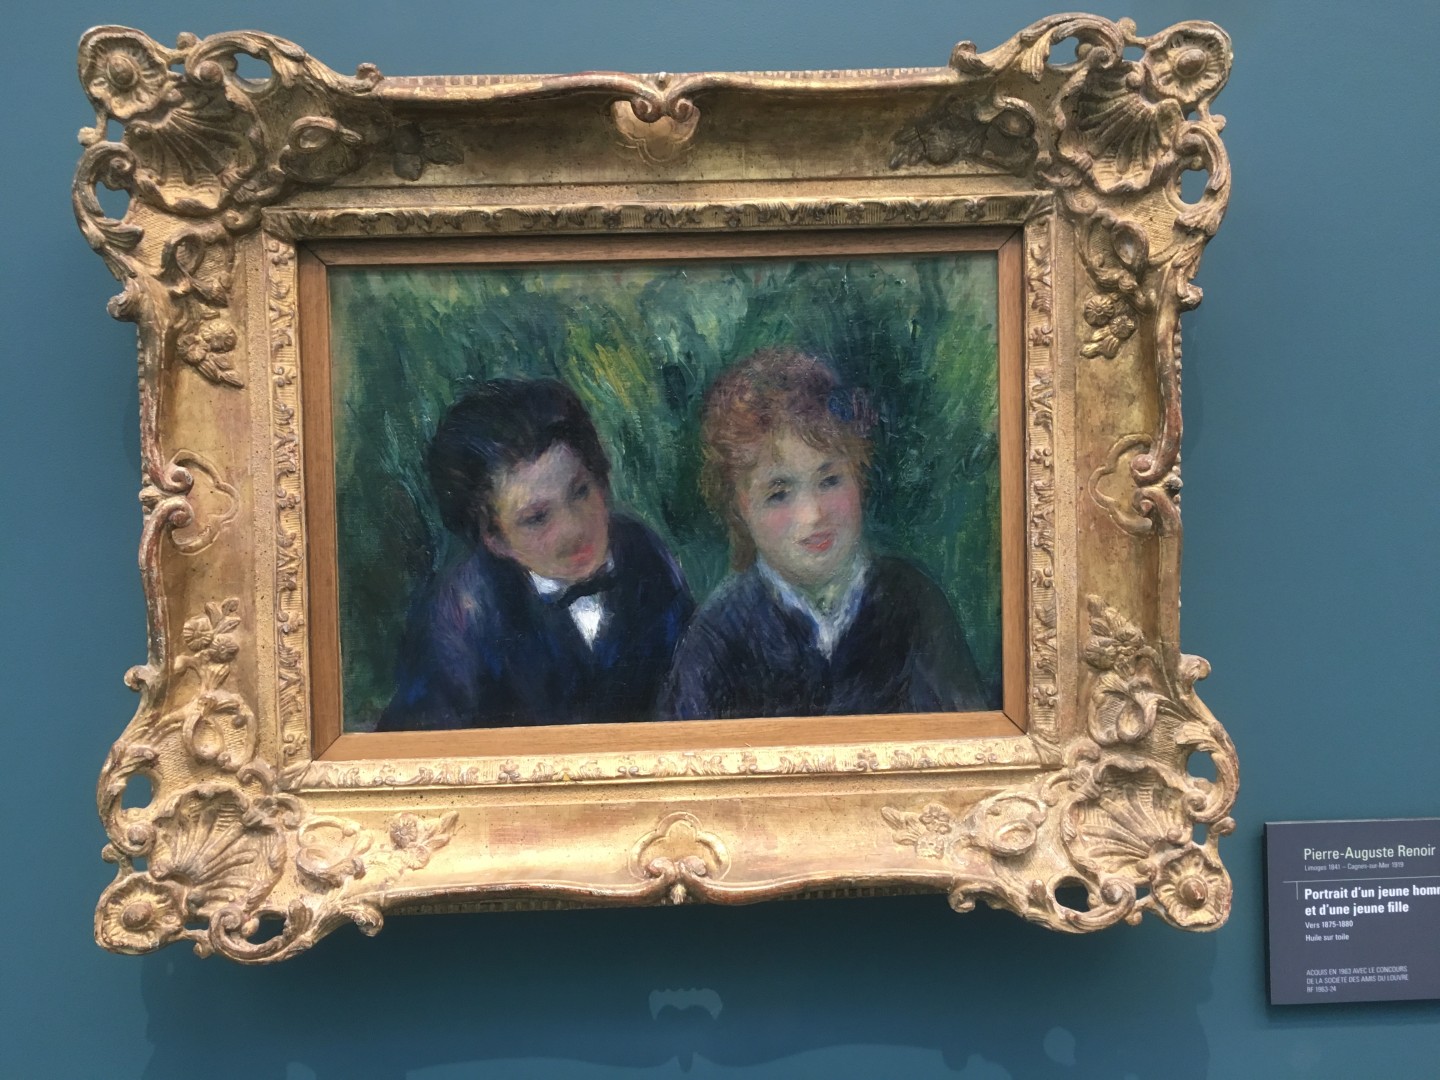 Pierre-Auguste Renoir Portrait d'un jeuene homme et d'une jeune fille